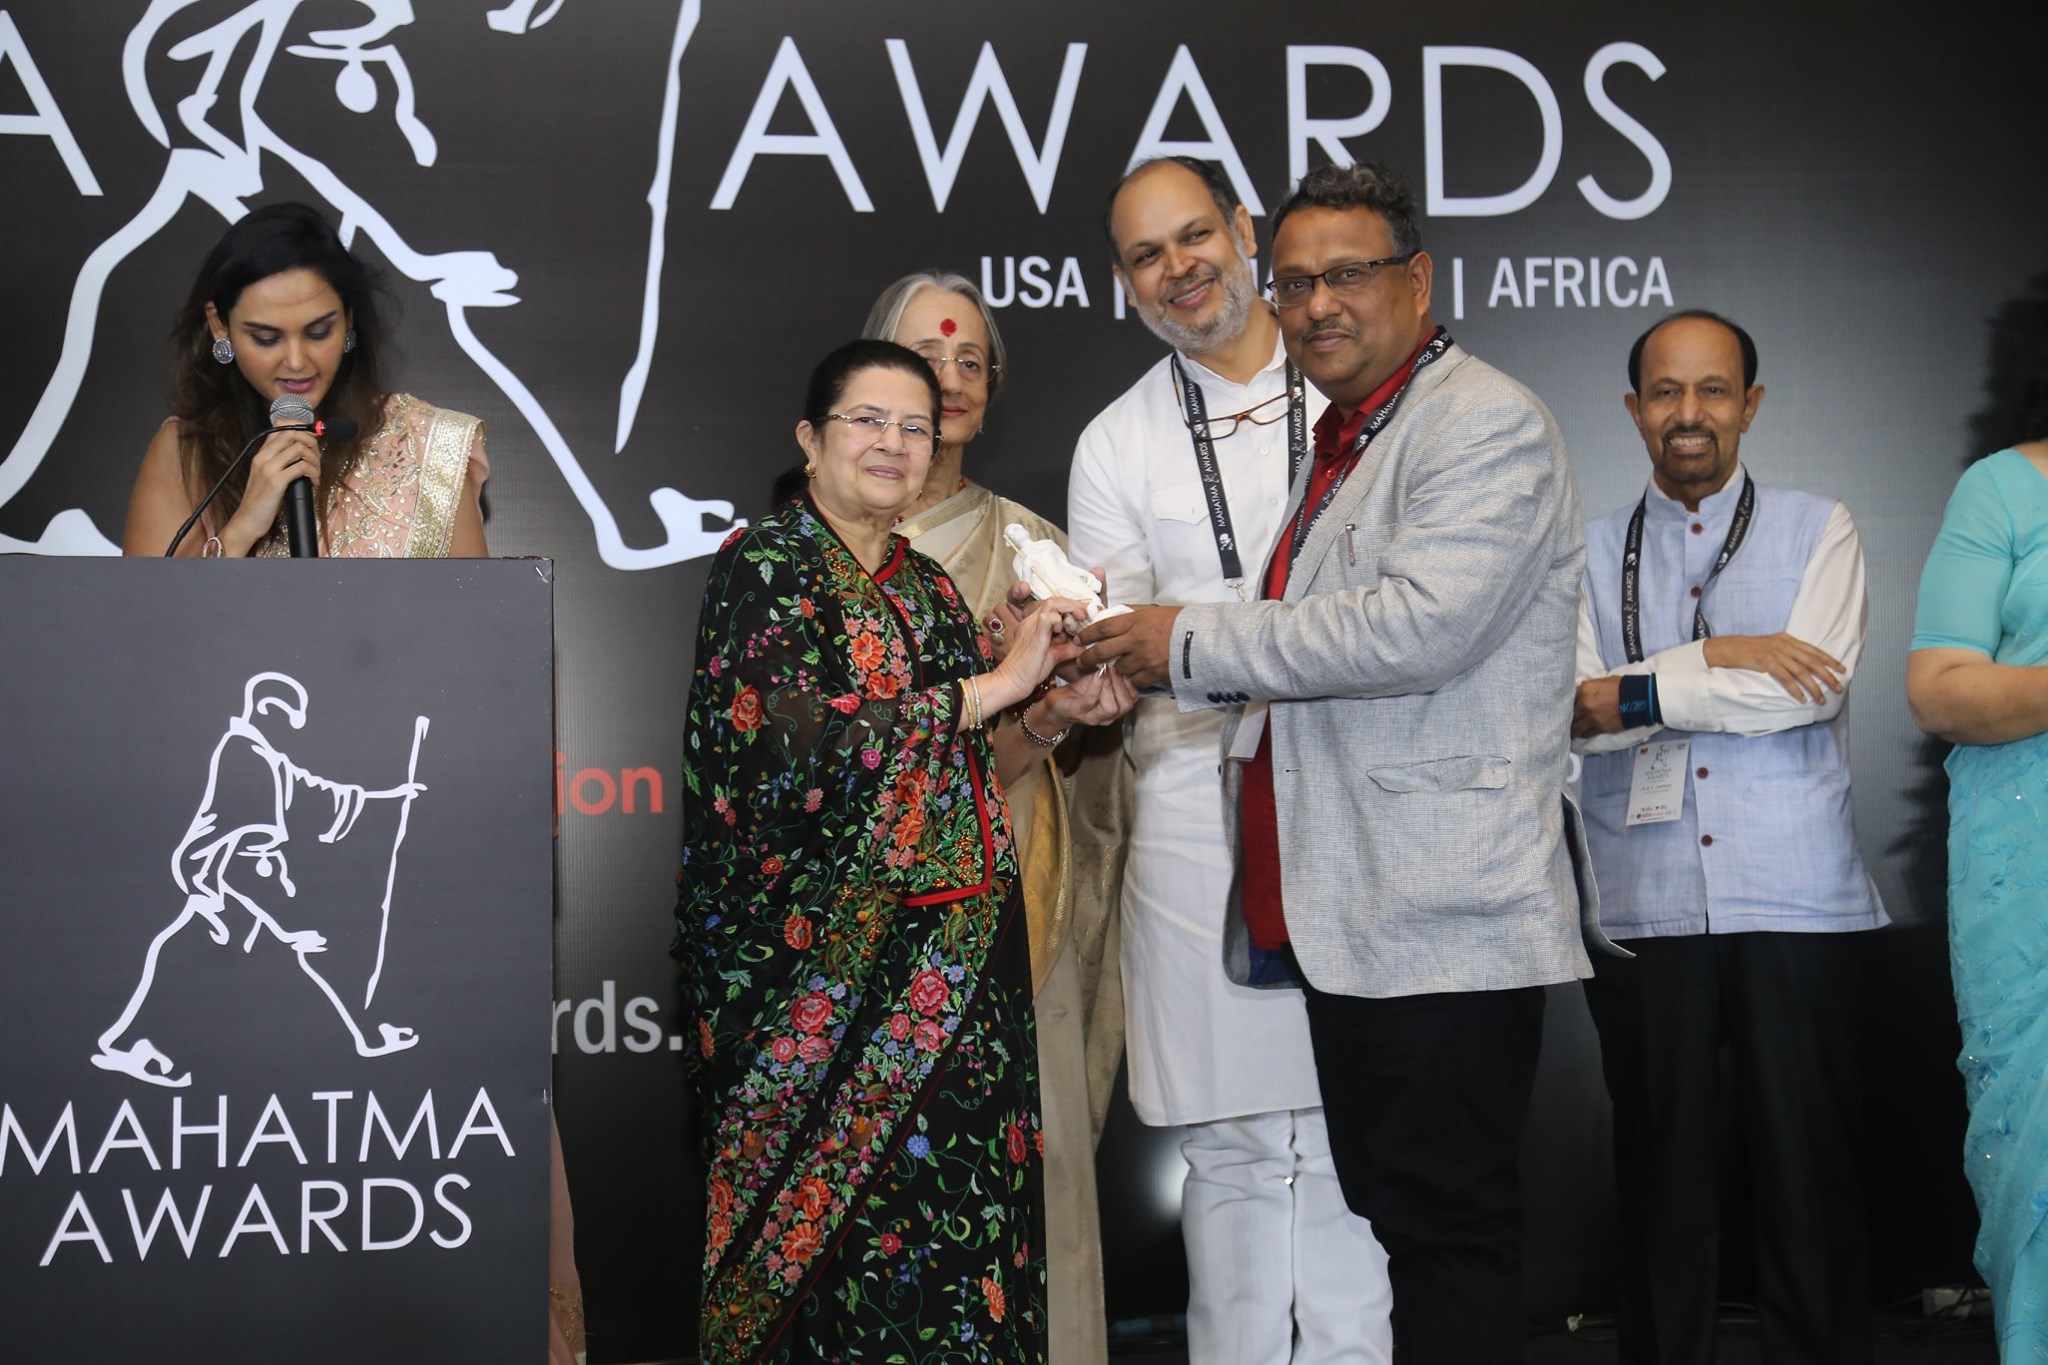 ESDO Honoured with Mahatma Awards from India